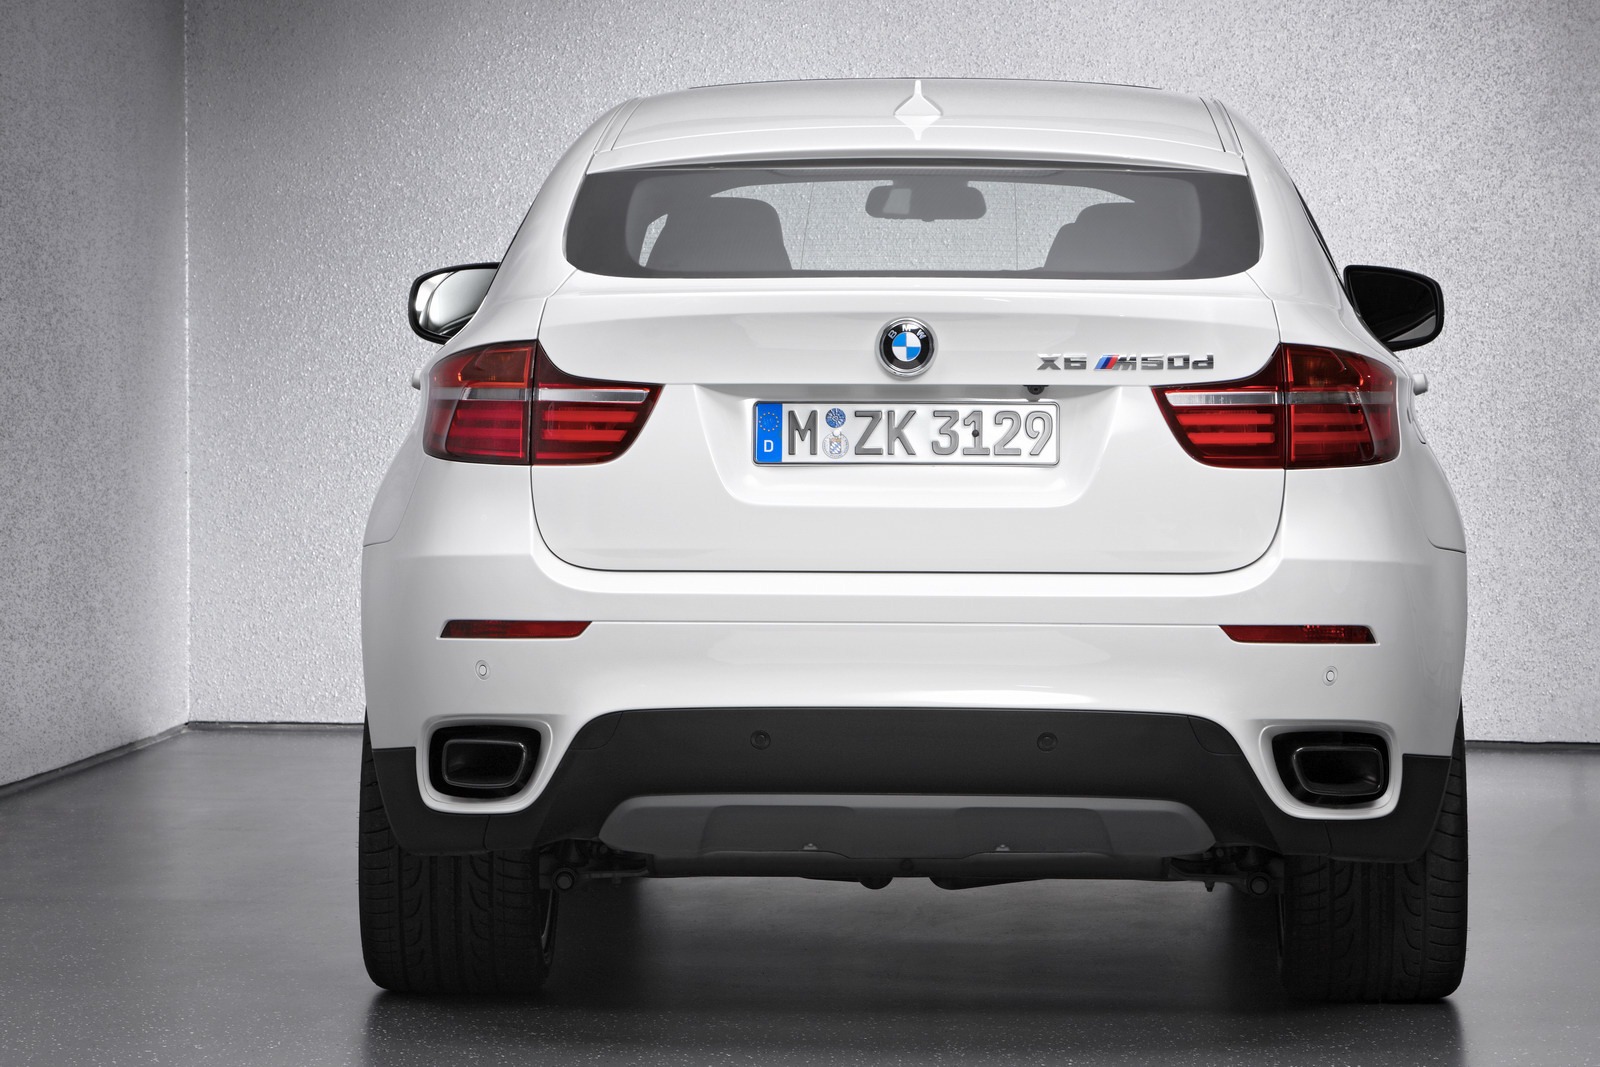 2013 BMW X6 Rear View